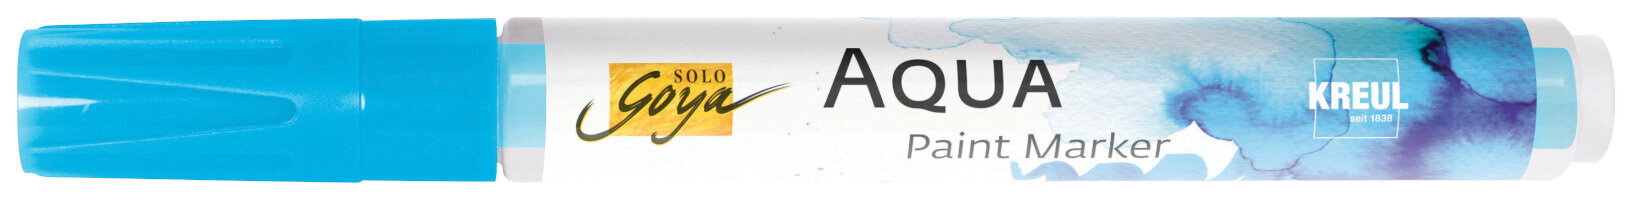 Merkintäkynä Kreul Aqua Aqua Paint Marker Cyan 1 kpl